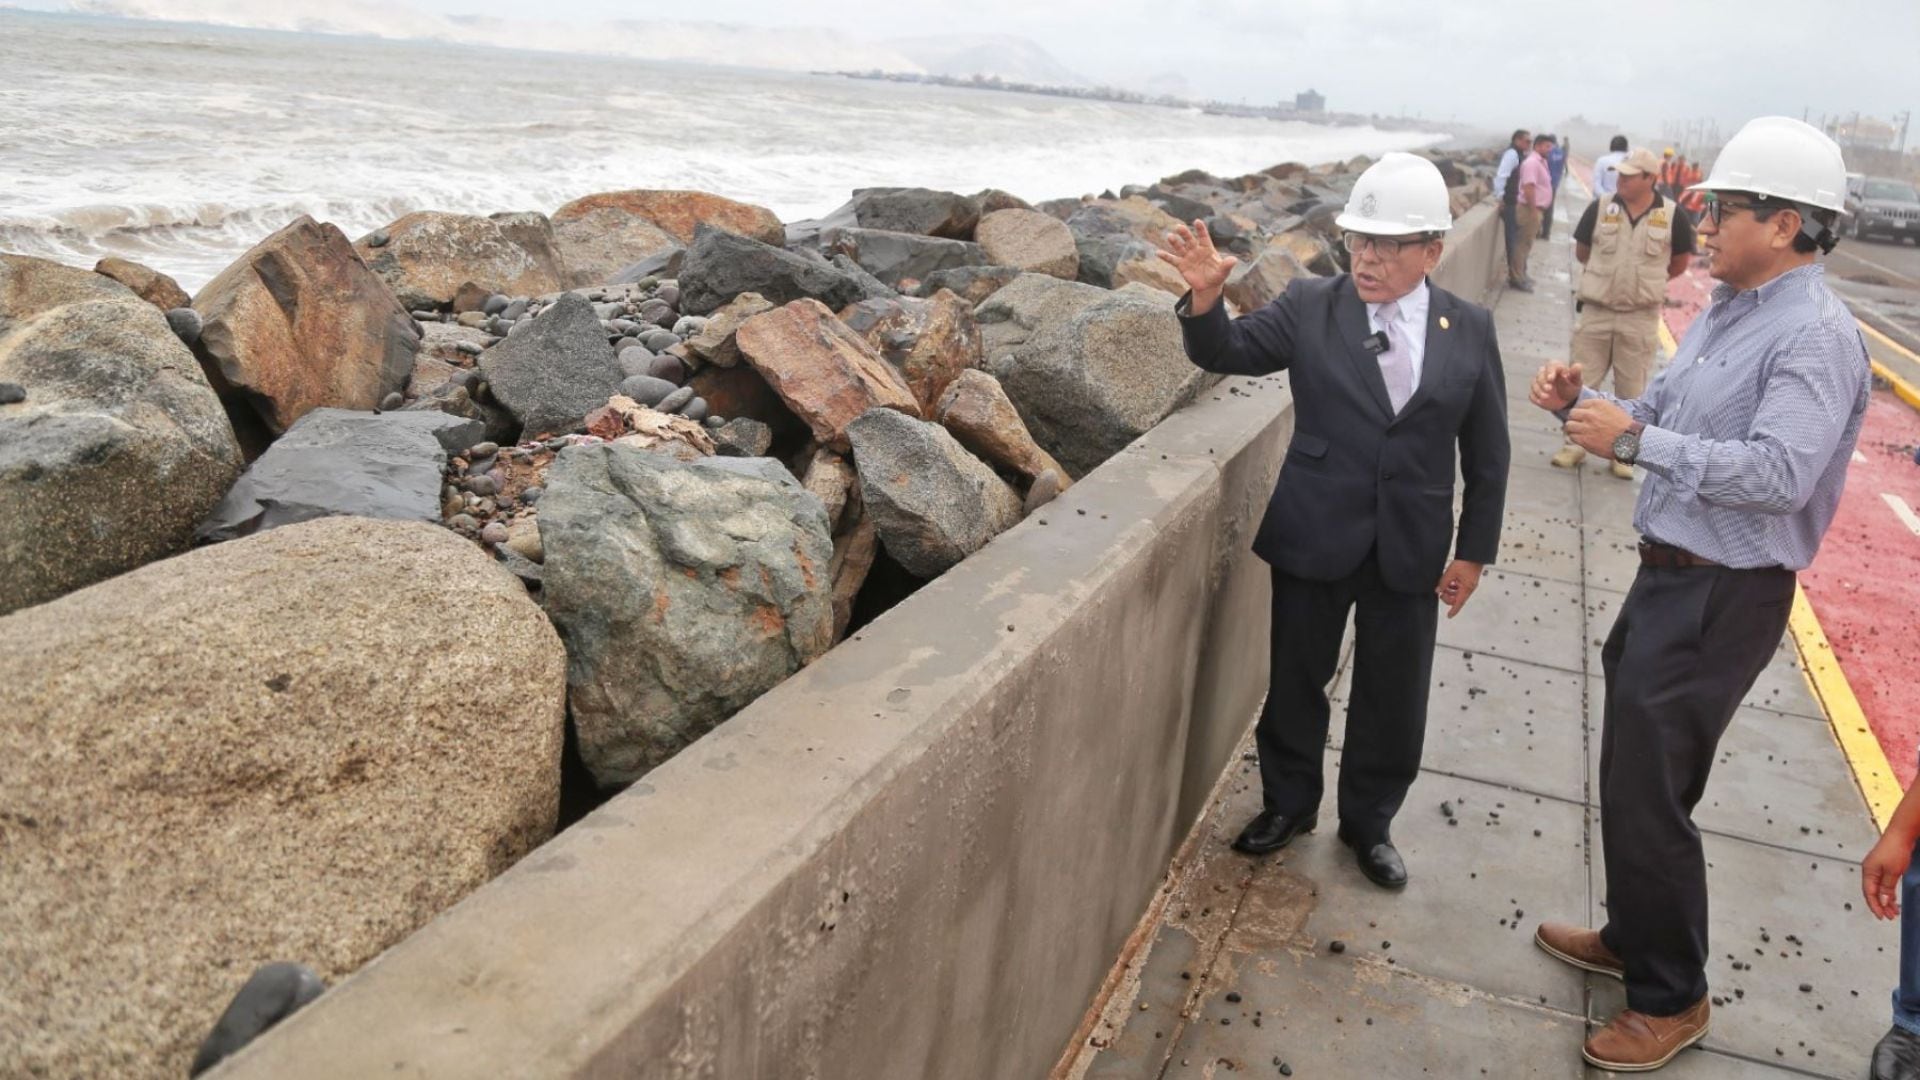 Hace dos semanas, las piedras que fueron arrastradas por la fuerza del mar hasta la vía Costa Verde tramo Callao, fueron recogidas por trabajadores del Gobierno Regional del Callao, apoyados con maquinaria pesada. (Andina)